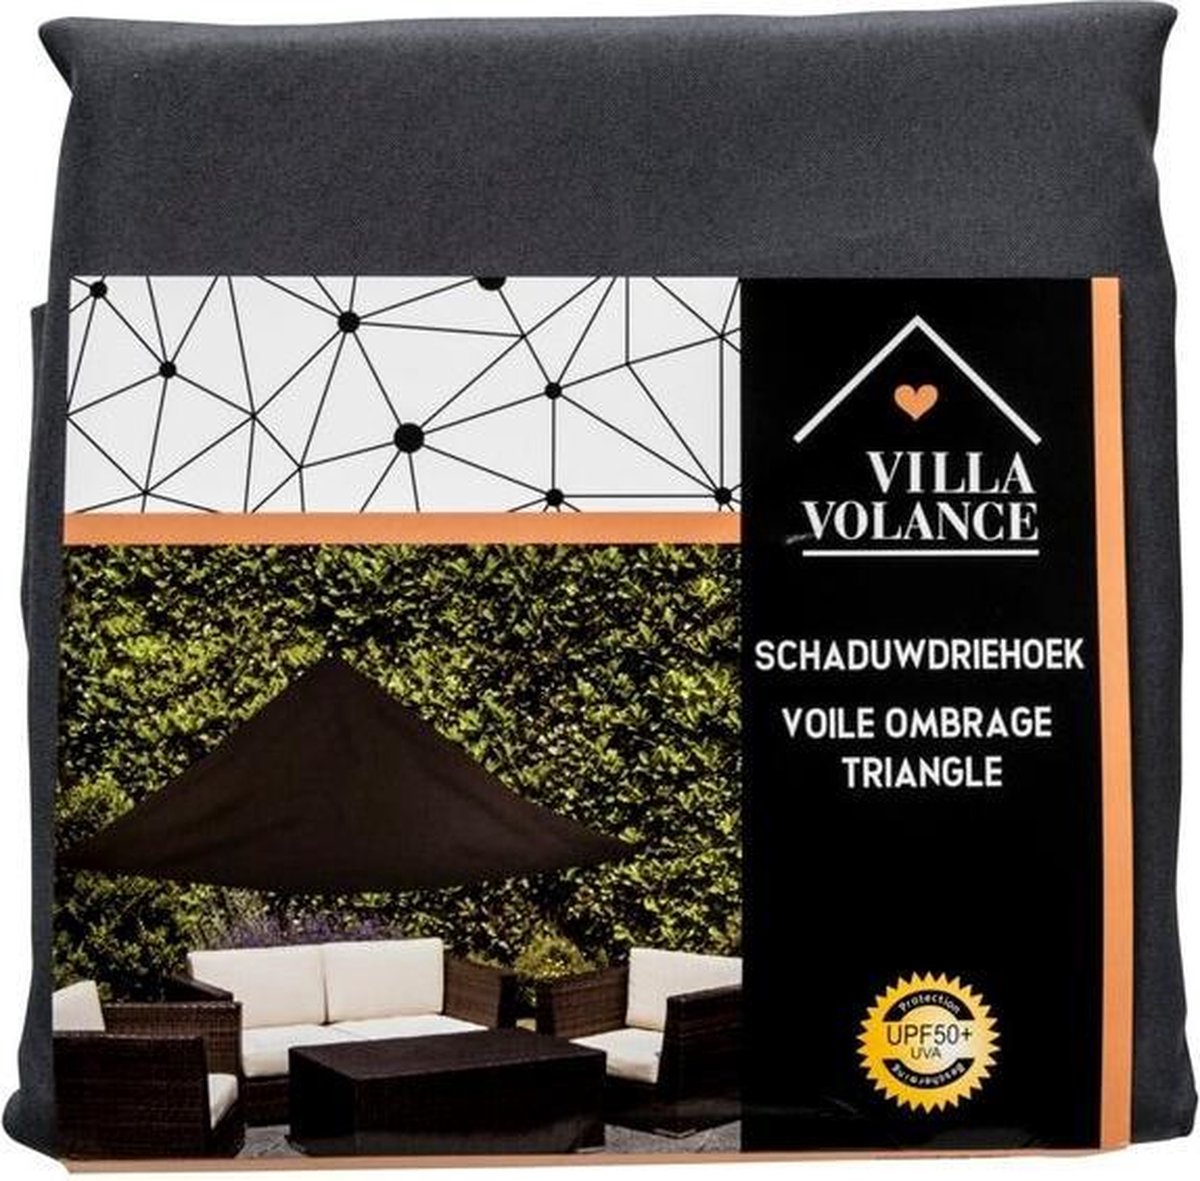 Villa Volance hoge kwaliteit schaduwdriehoek - 3.6 X 3.6 X 3.6 m - UV  bescherming... | bol.com